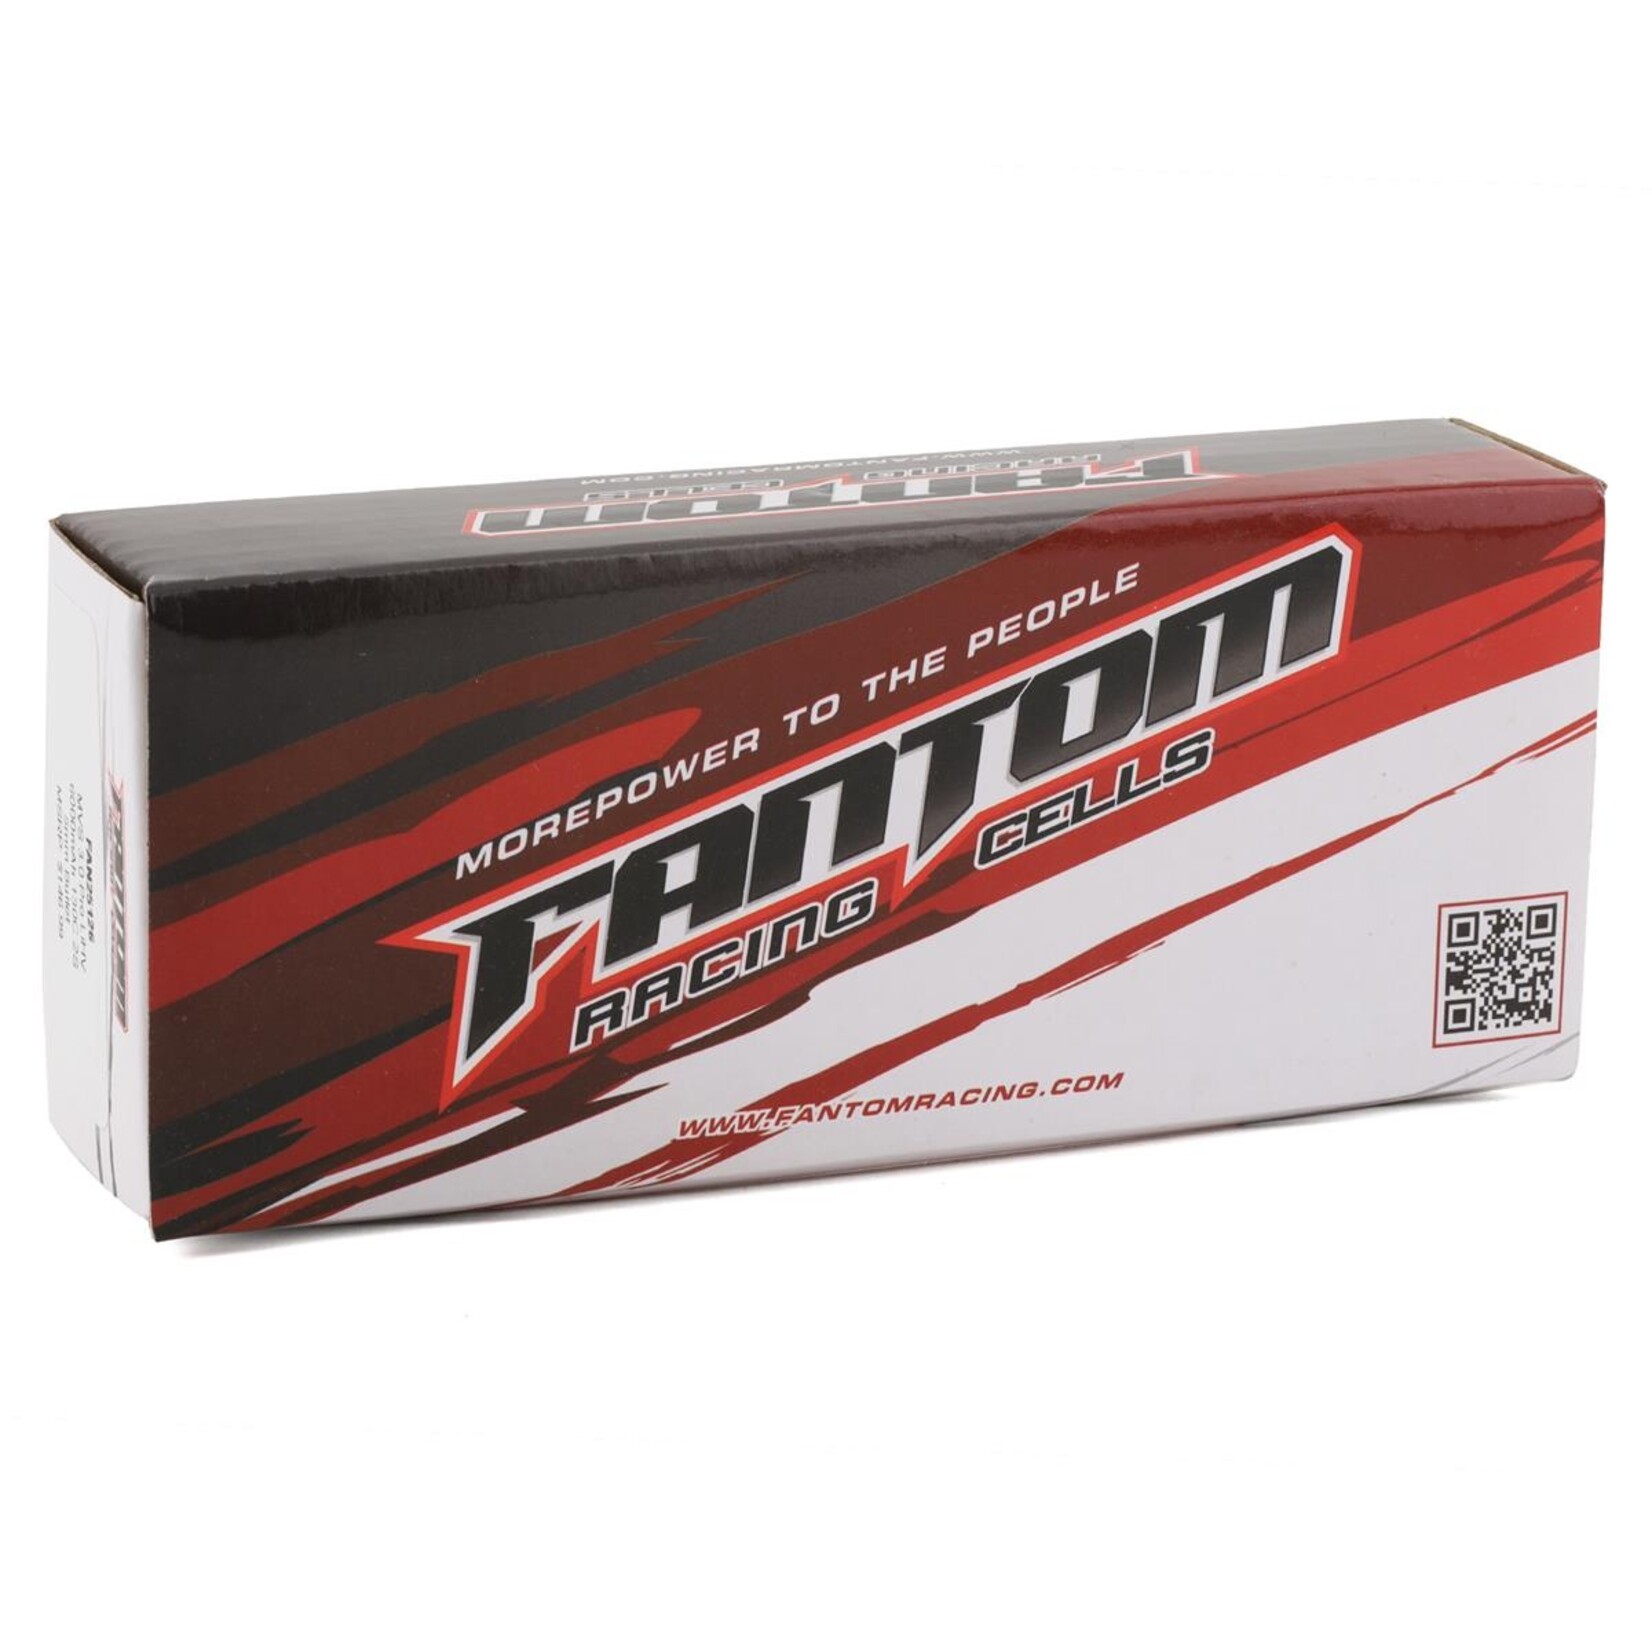 Fantom Fantom Pro Series HV MVS 2.0 ULCG 2S LiPo 130C Battery (7.6/5500mAh) w/5mm Bullets #FAN25136